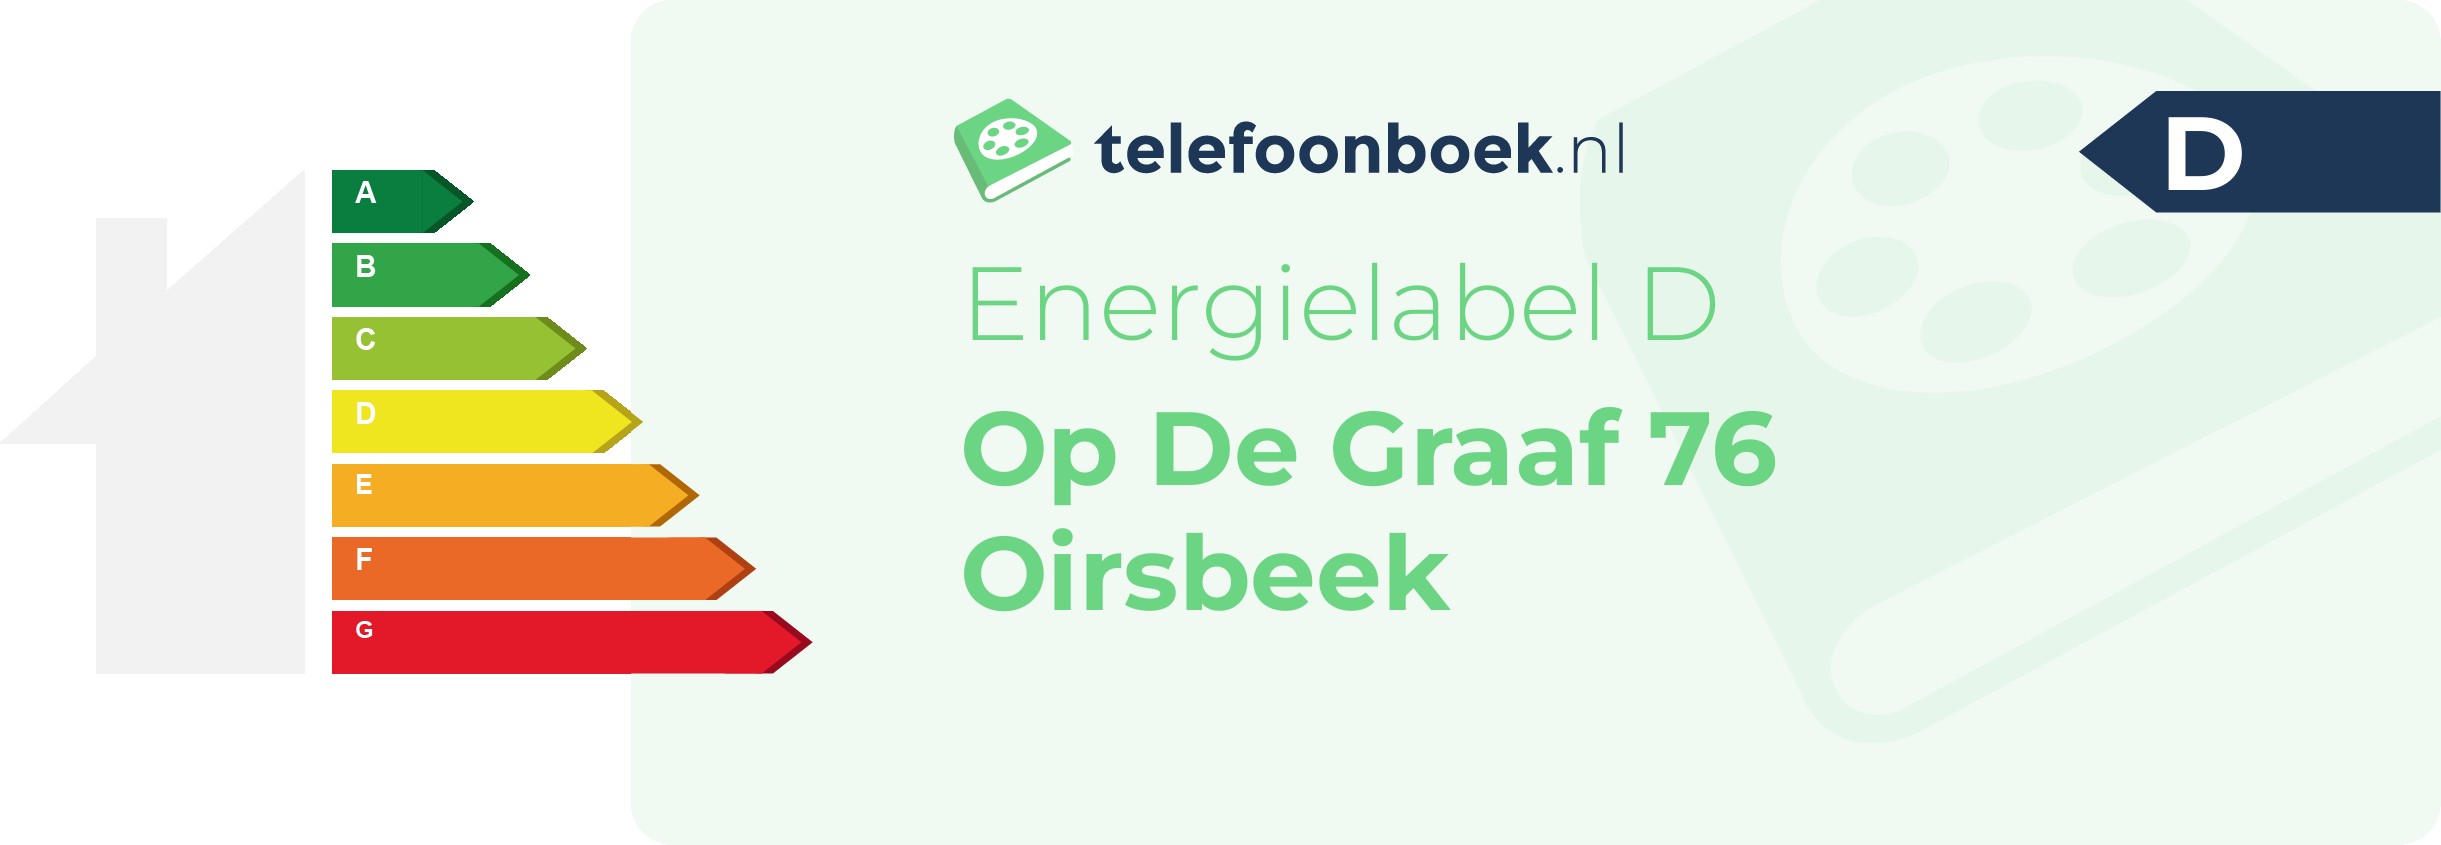 Energielabel Op De Graaf 76 Oirsbeek